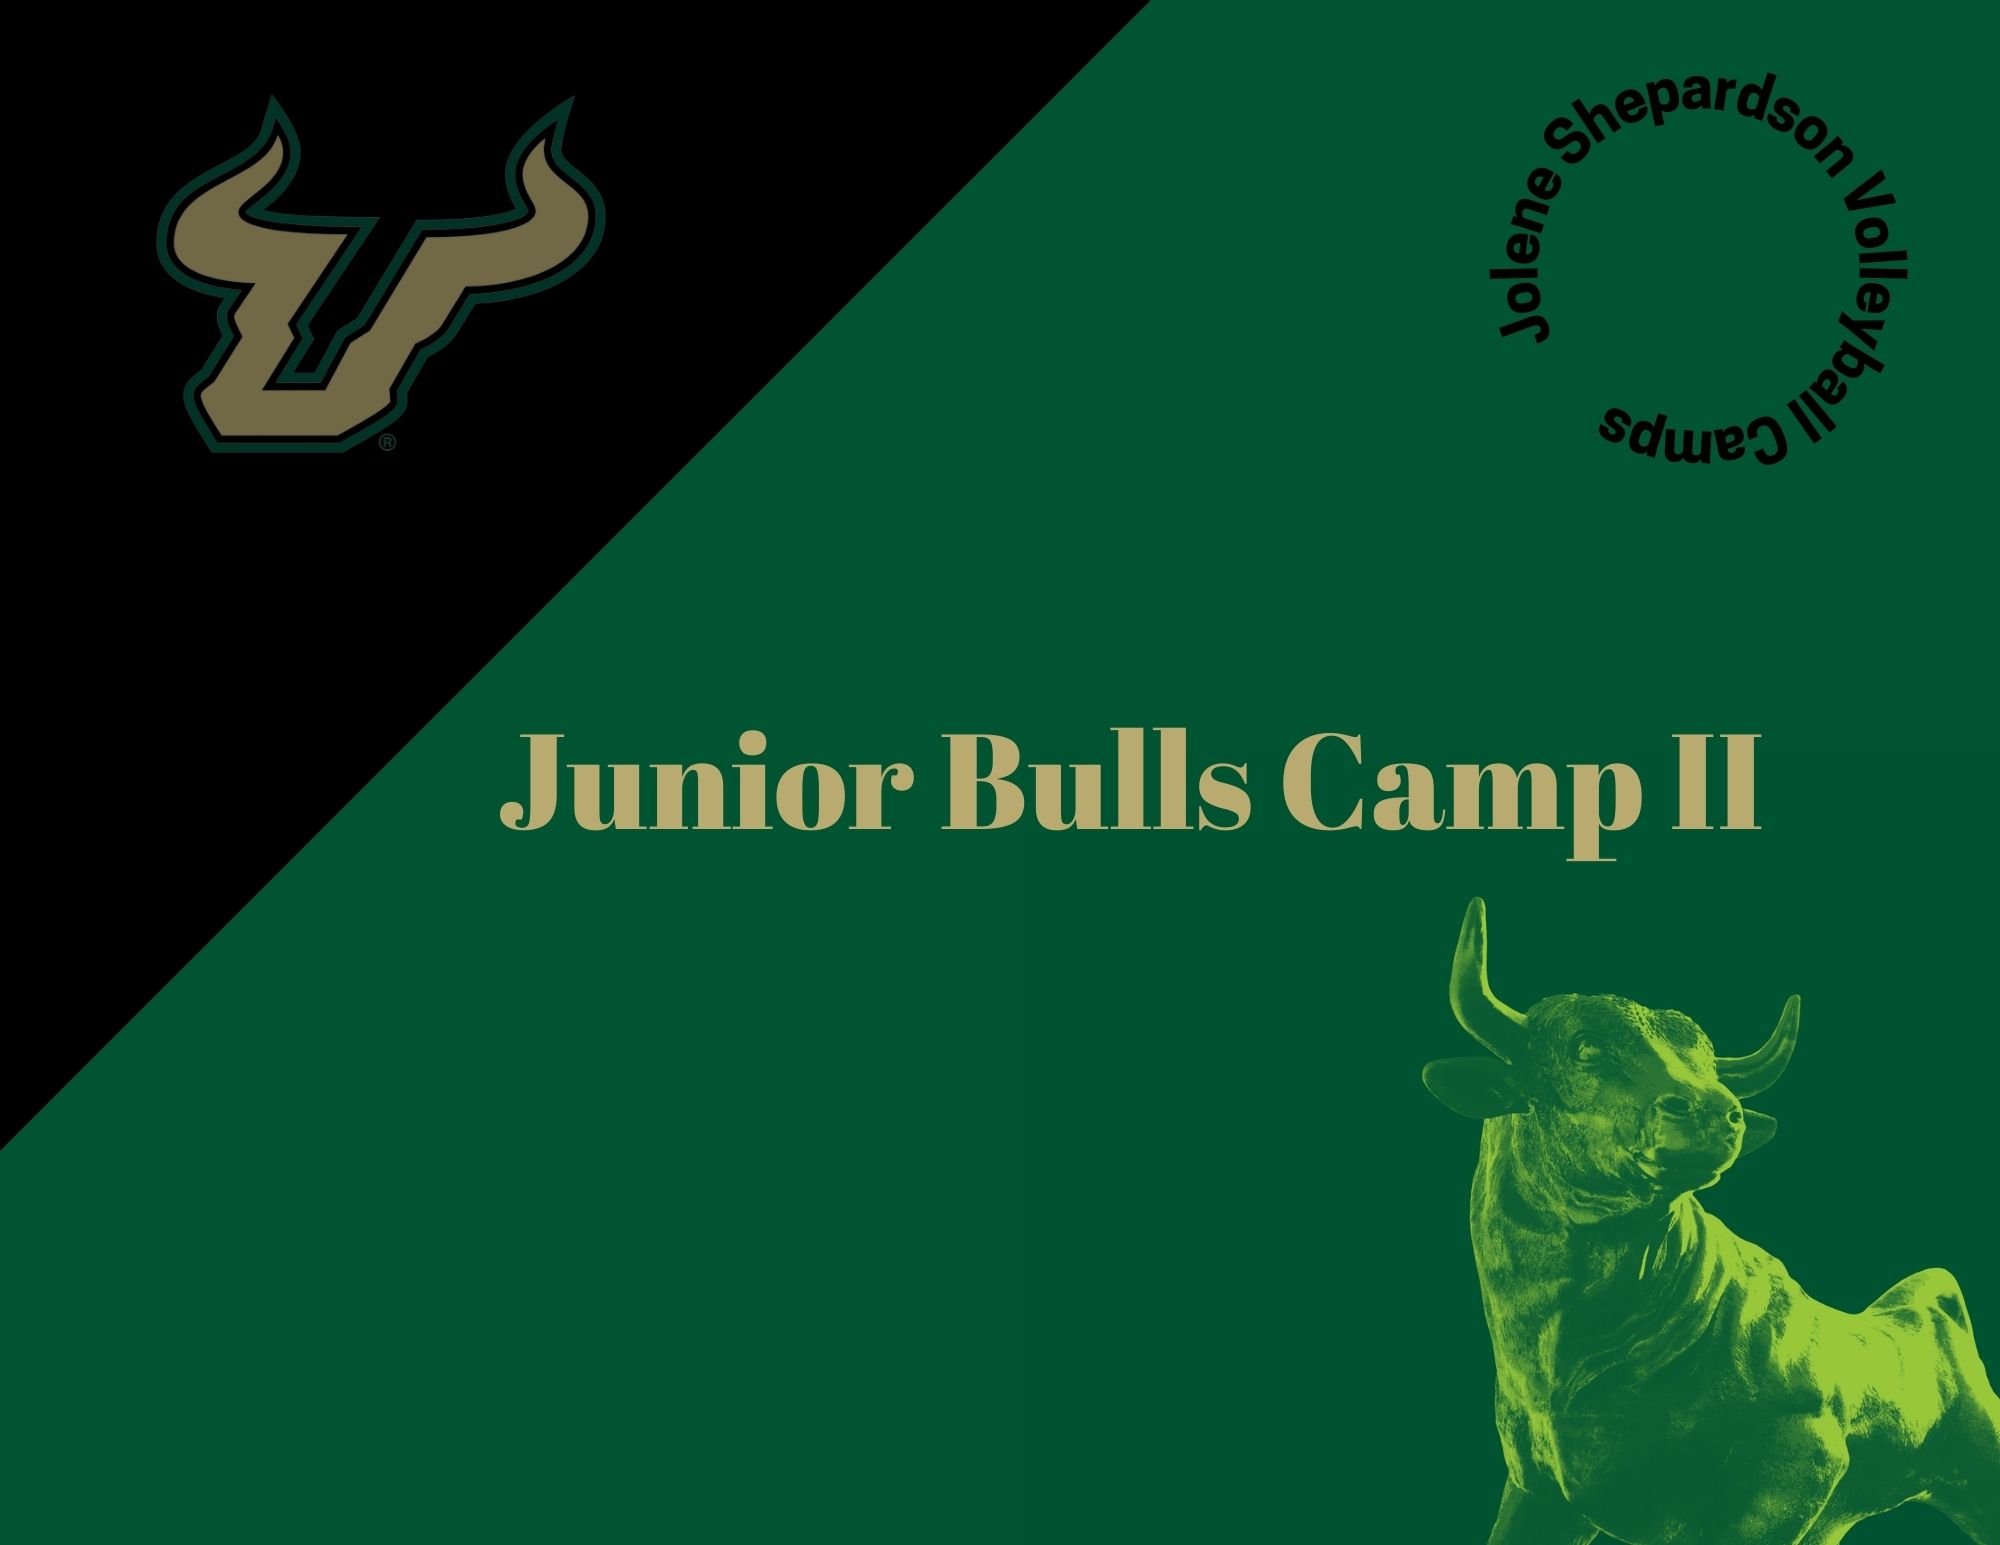 Junior Bulls Camp II event image